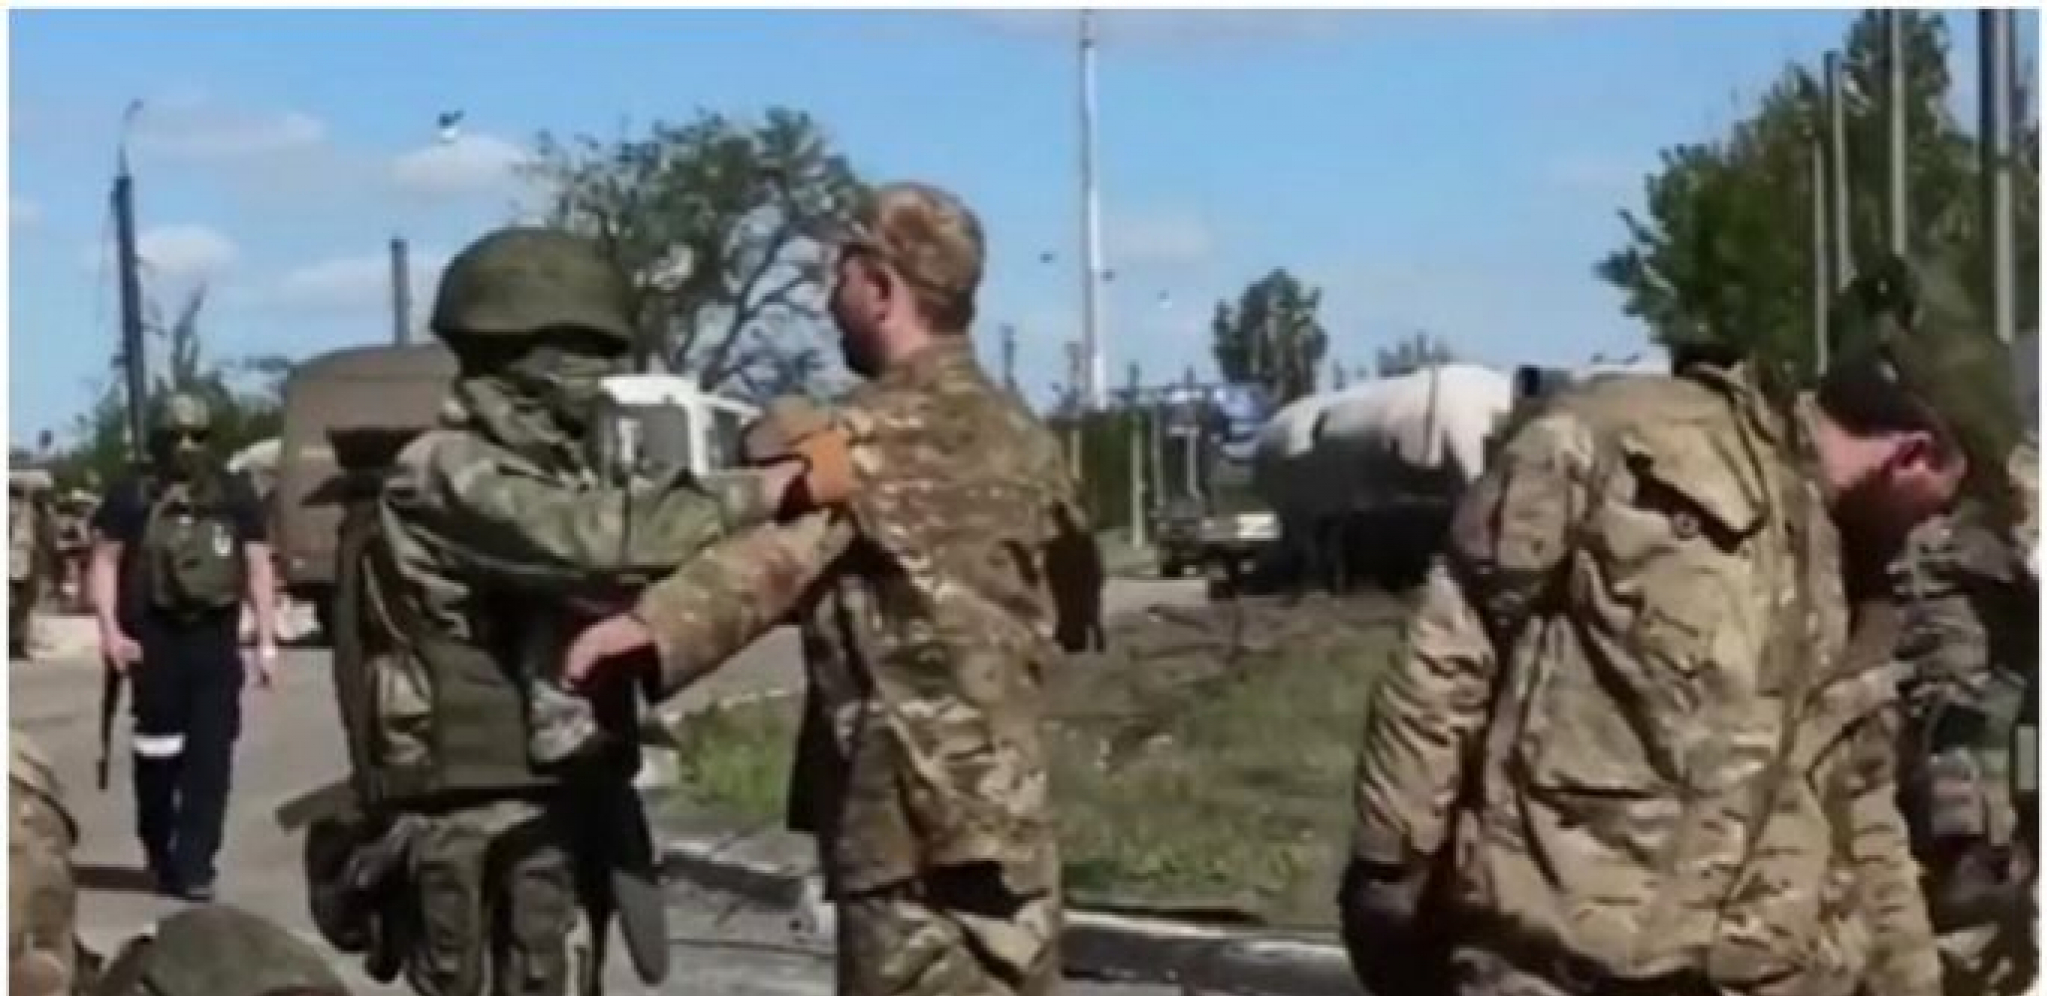 BELA ZASTAVA Predao se komandant ukrajinskog bataljona Ajdar, izašao sa rukama uvis